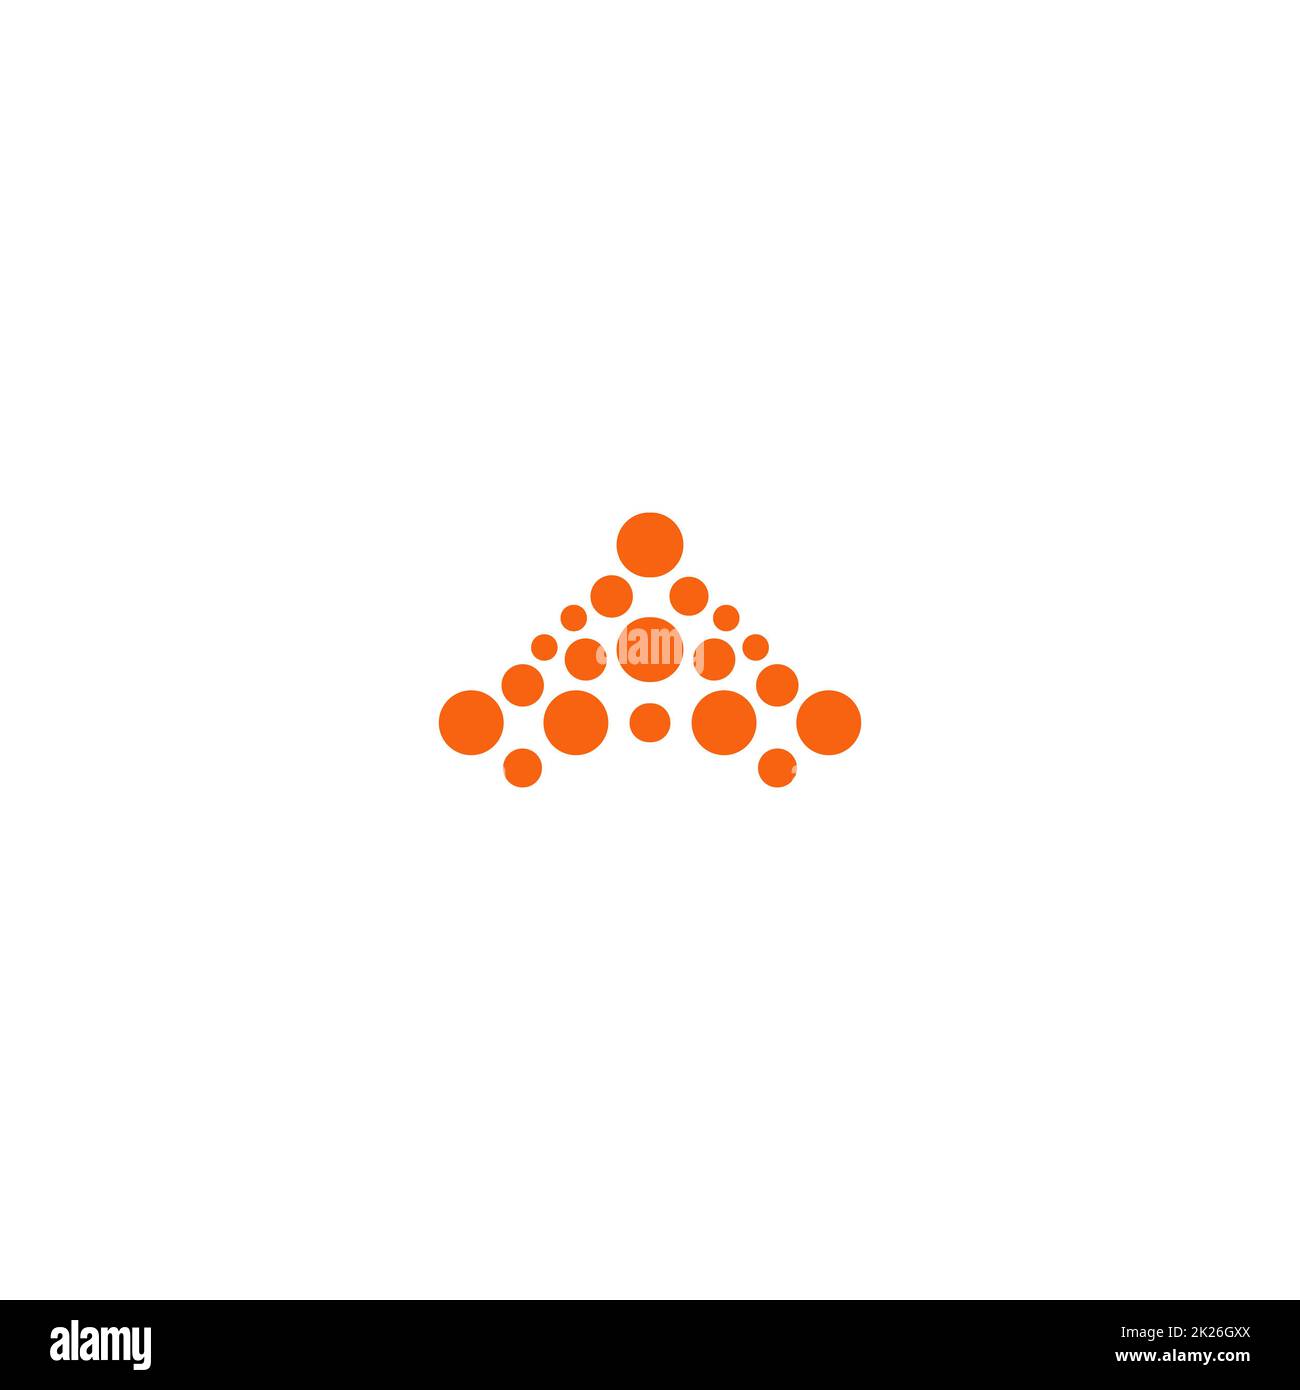 Premium abstrakte logo Vorlage. Vektor Kreise formen. Moderne orange Firmenlogo. Vektor Emblem auf weißem Hintergrund. Stockfoto